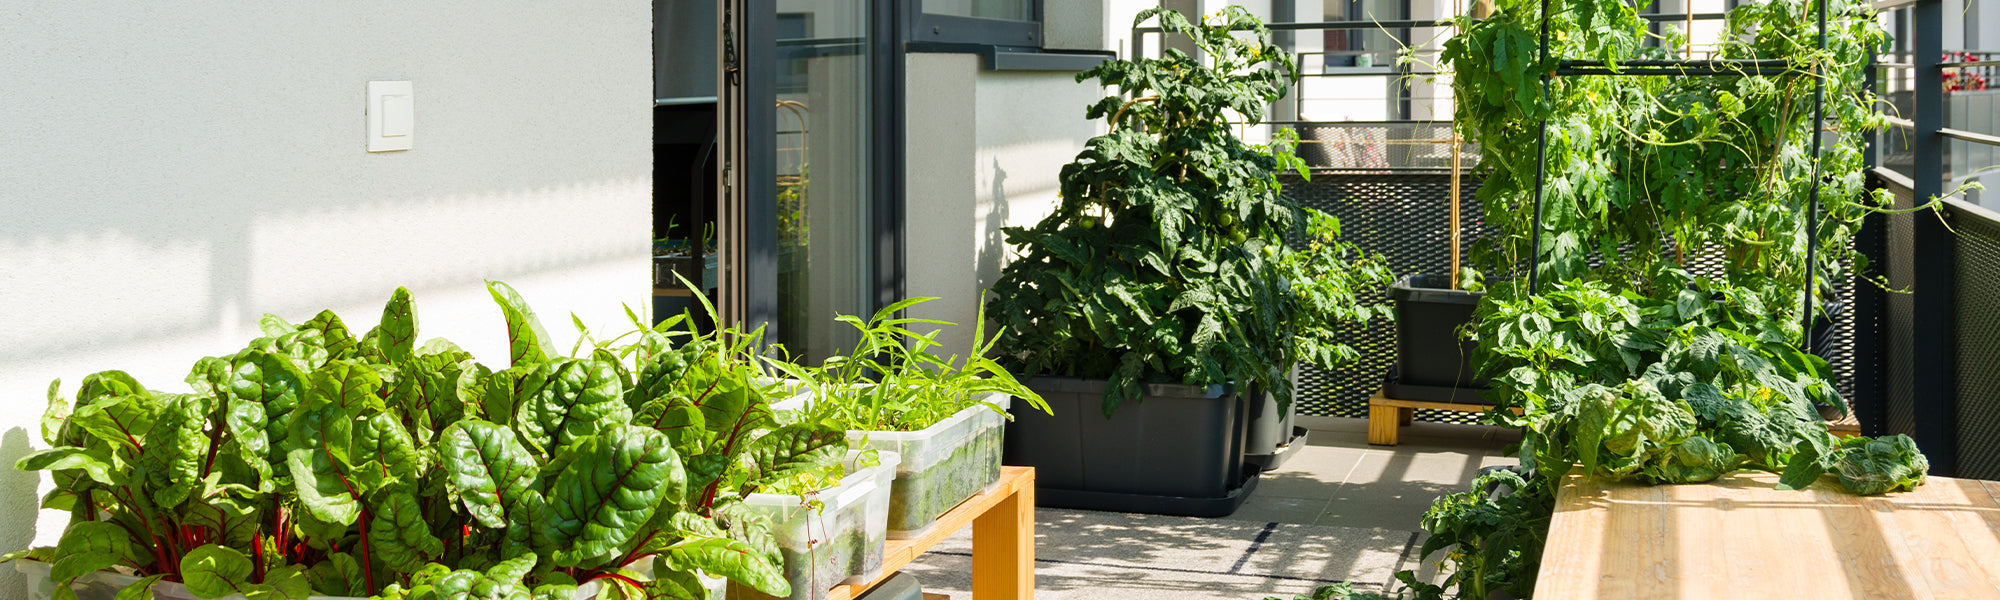 Potager d'intérieur : 12 idées pour cultiver vos plantes aromatiques